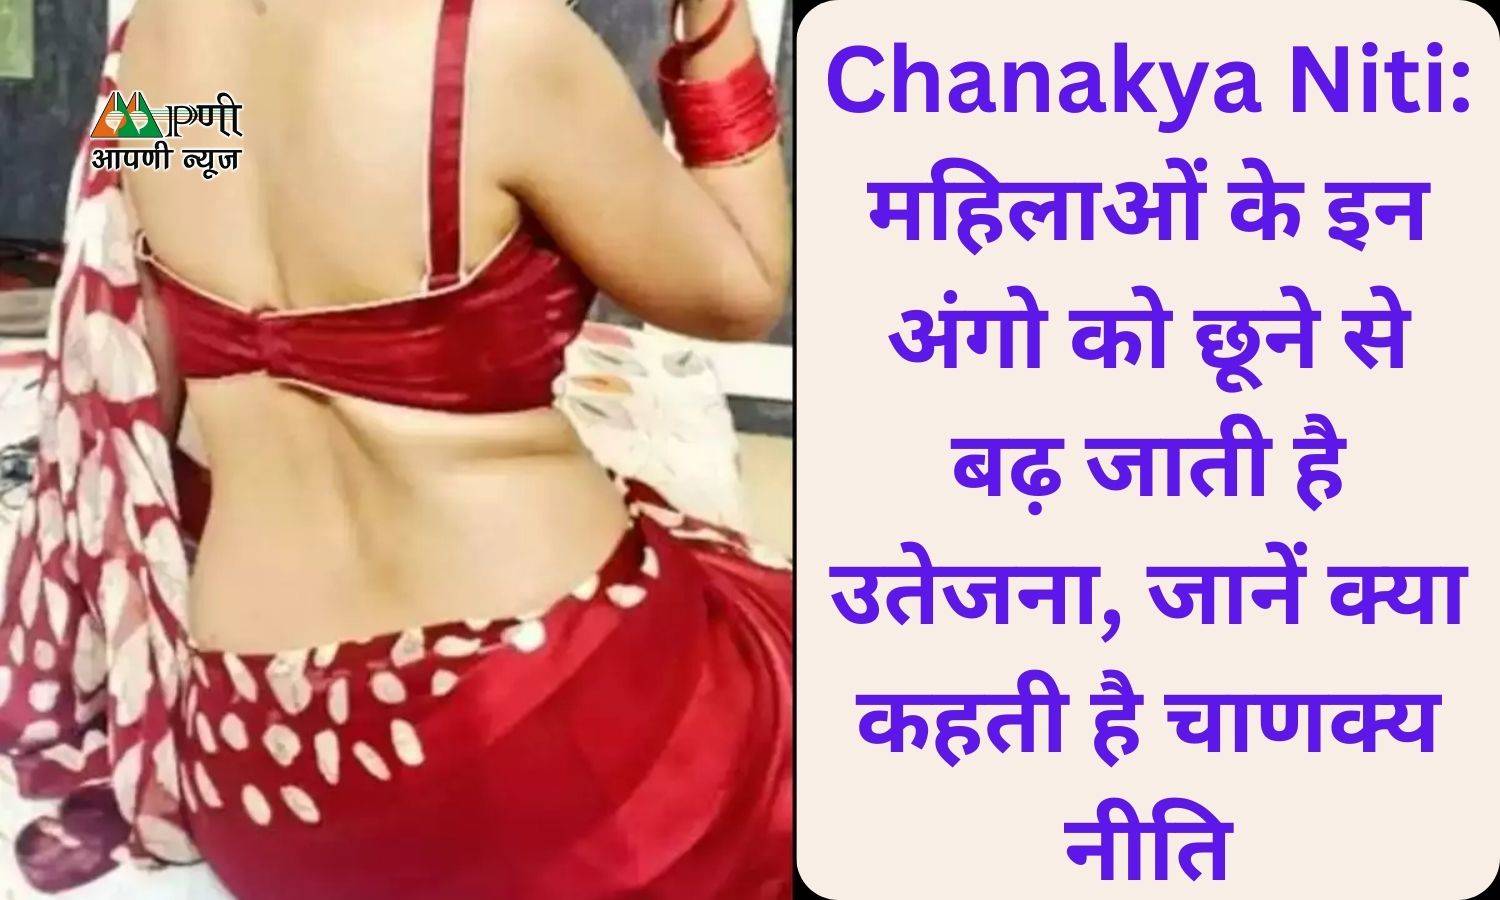 Chanakya Niti: महिलाओं के इन अंगो को छूने से बढ़ जाती है उतेजना, जानें क्या कहती है चाणक्य नीति